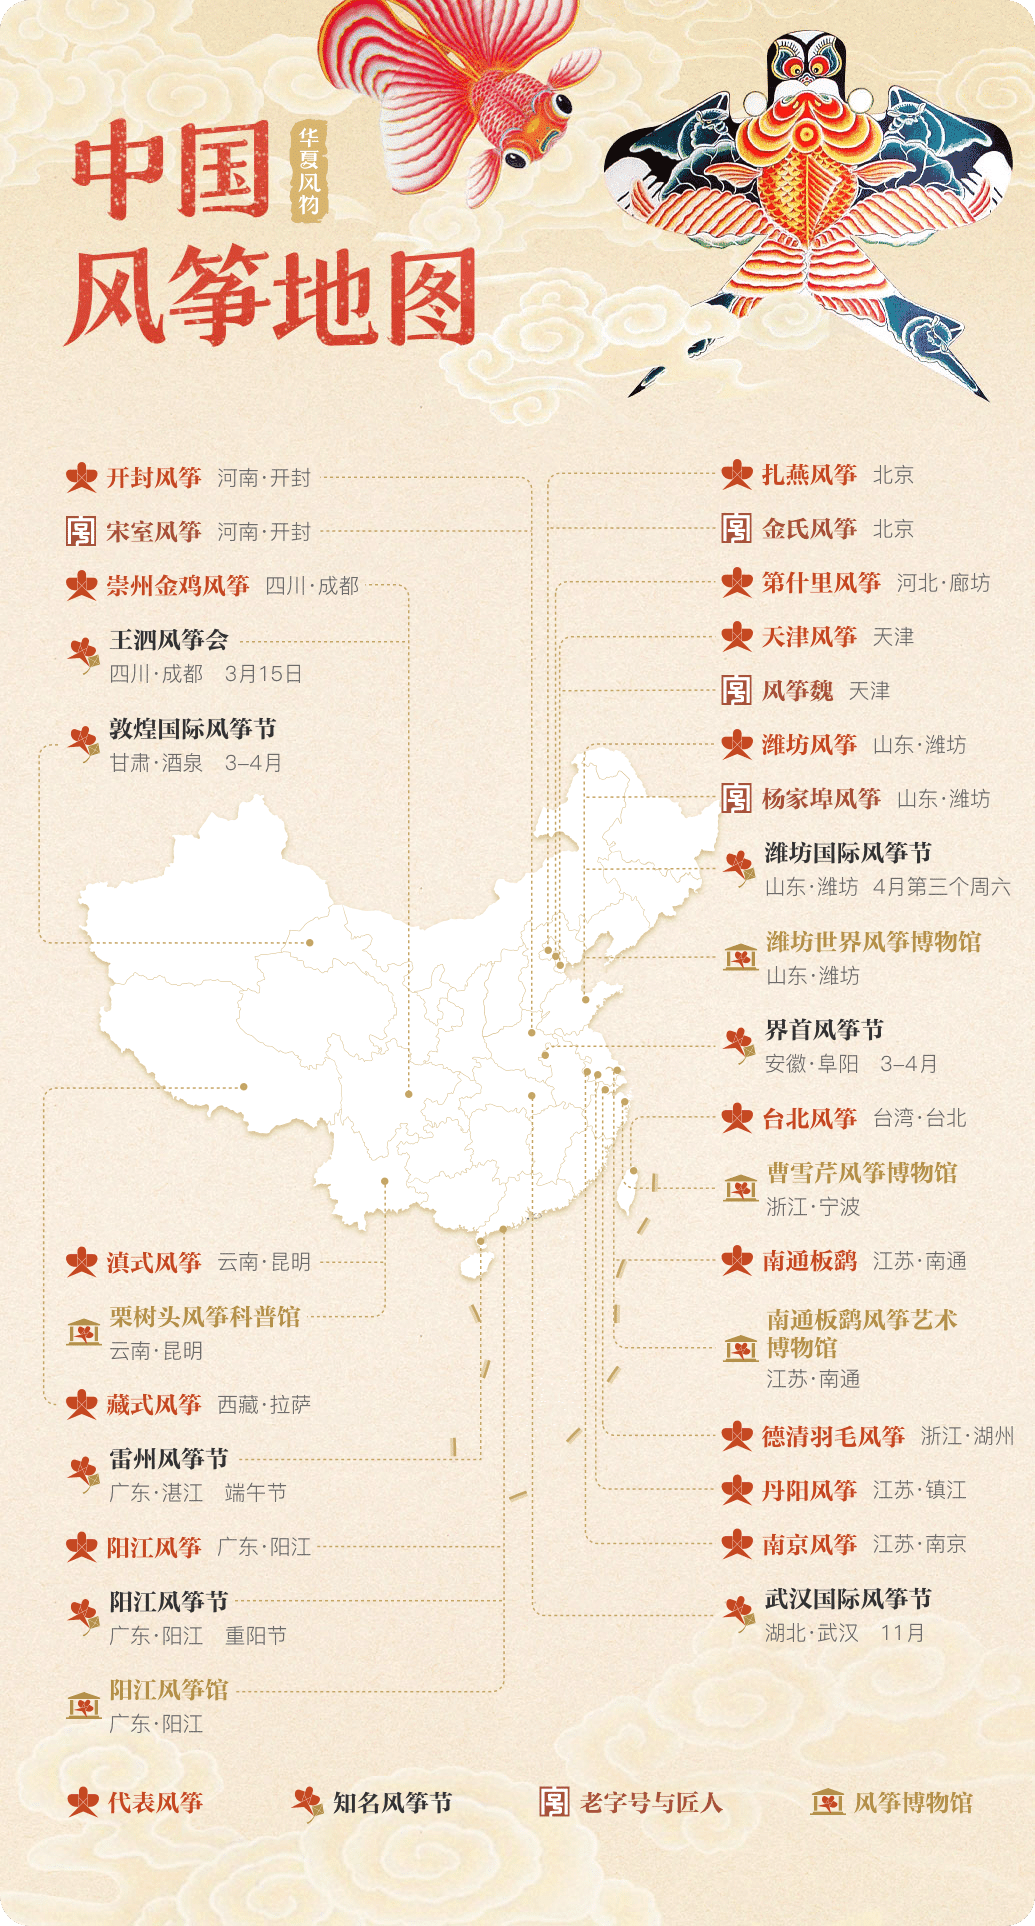 中国风筝地图 ©华夏风物